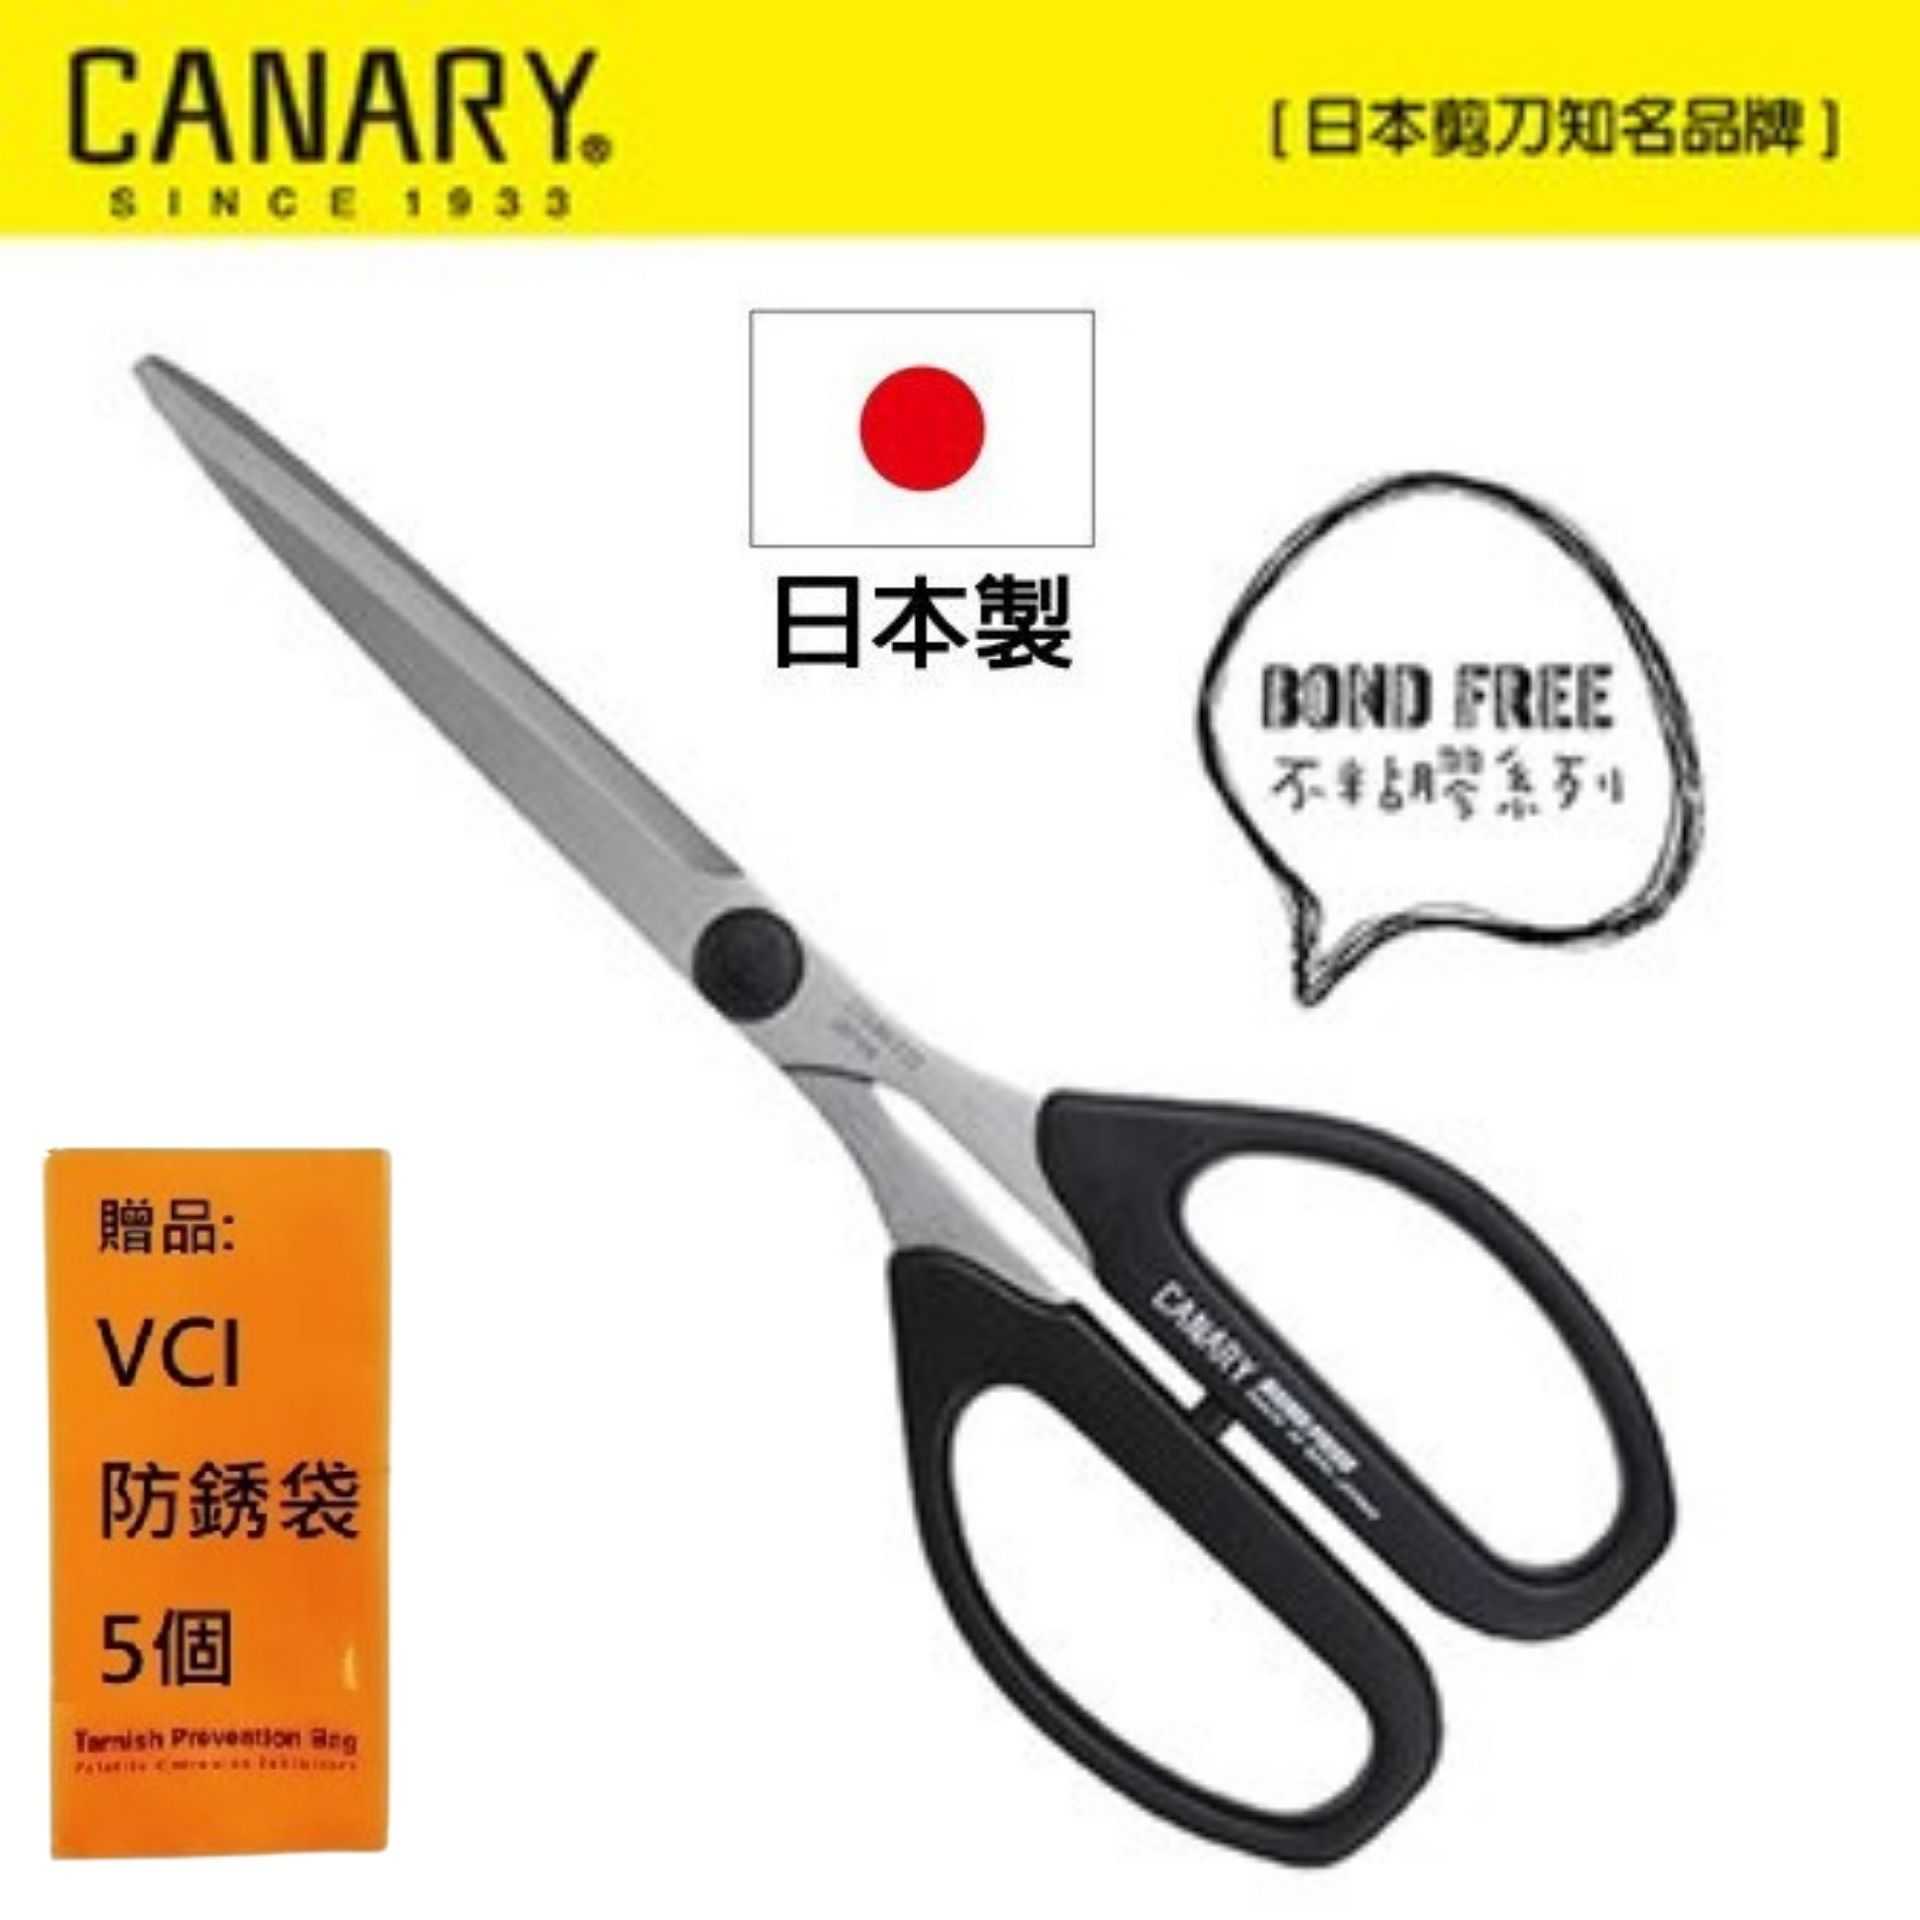 【日本CANARY】BOND FREE系列-不粘膠長刃剪刀 日本製造日本原裝